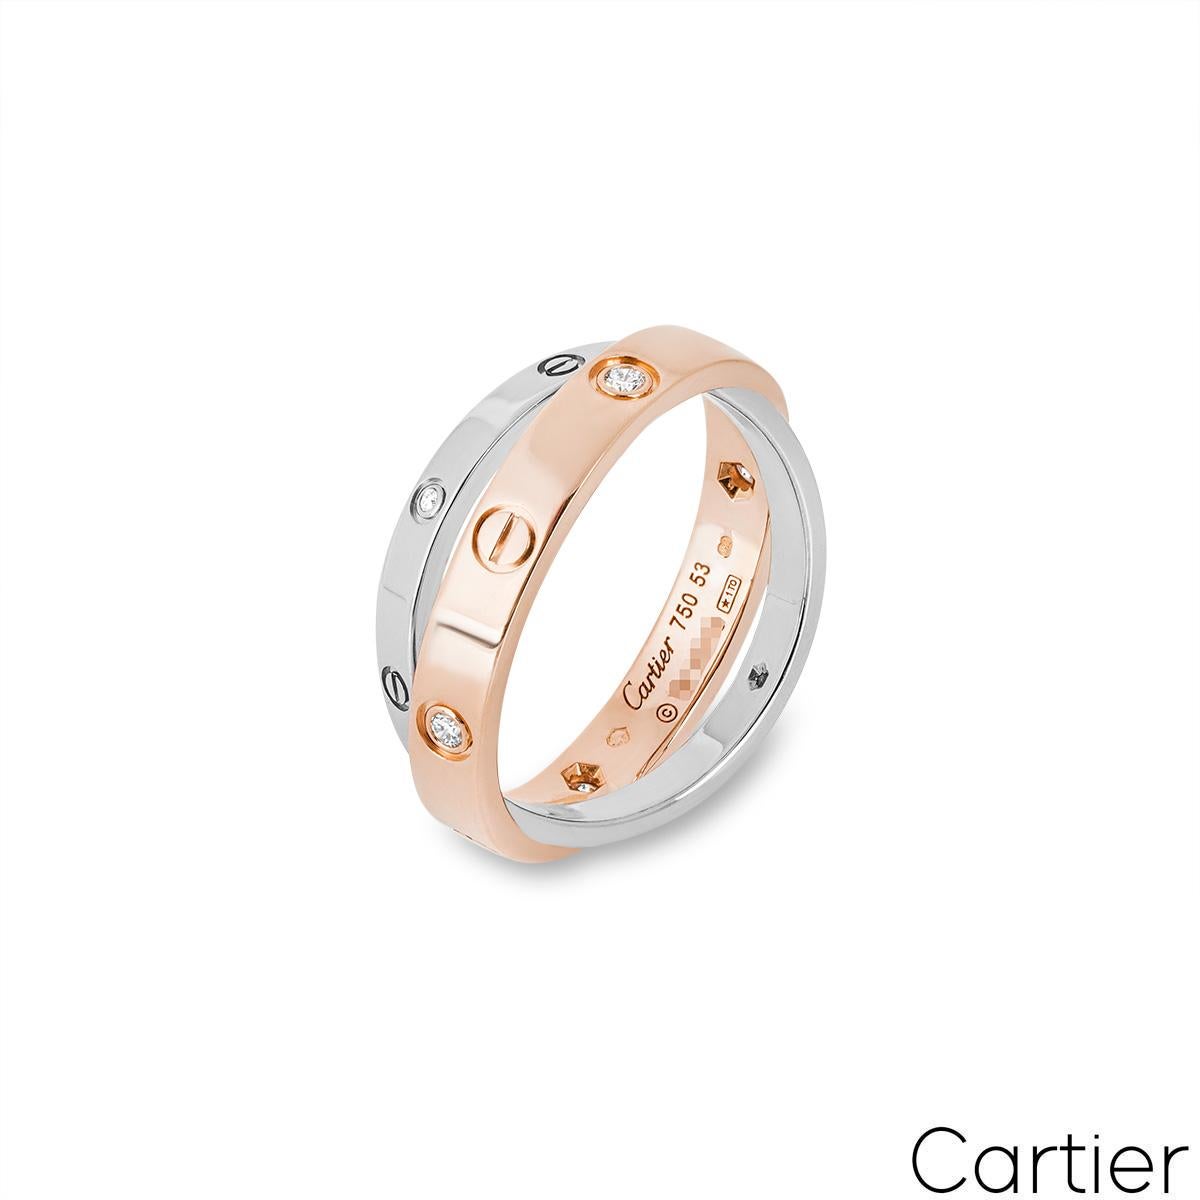 Ein eleganter Doppelring mit Diamanten aus 18 Karat Rosé- und Weißgold von Cartier aus der Kollektion Love. Das 3,5 mm breite Band aus Roségold ist mit 4 runden Diamanten im Brillantschliff und abwechselnden Schraubenmotiven besetzt. Das 2,5 mm